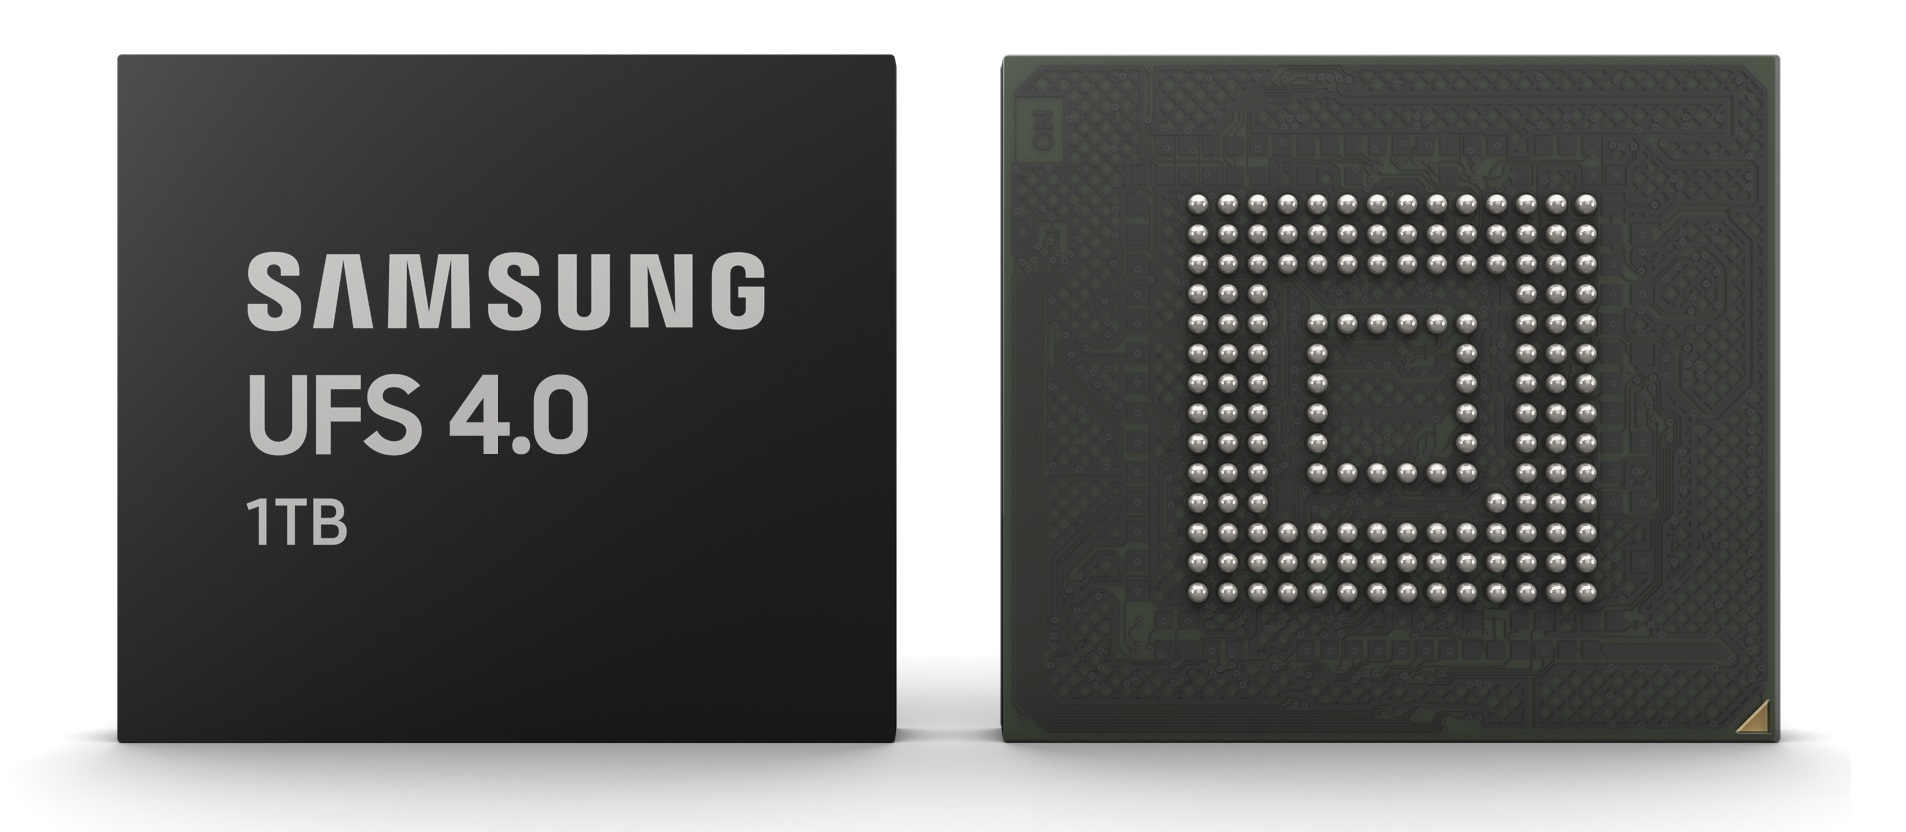 Samsung annonce la norme de mémoire flash UFS 4.0